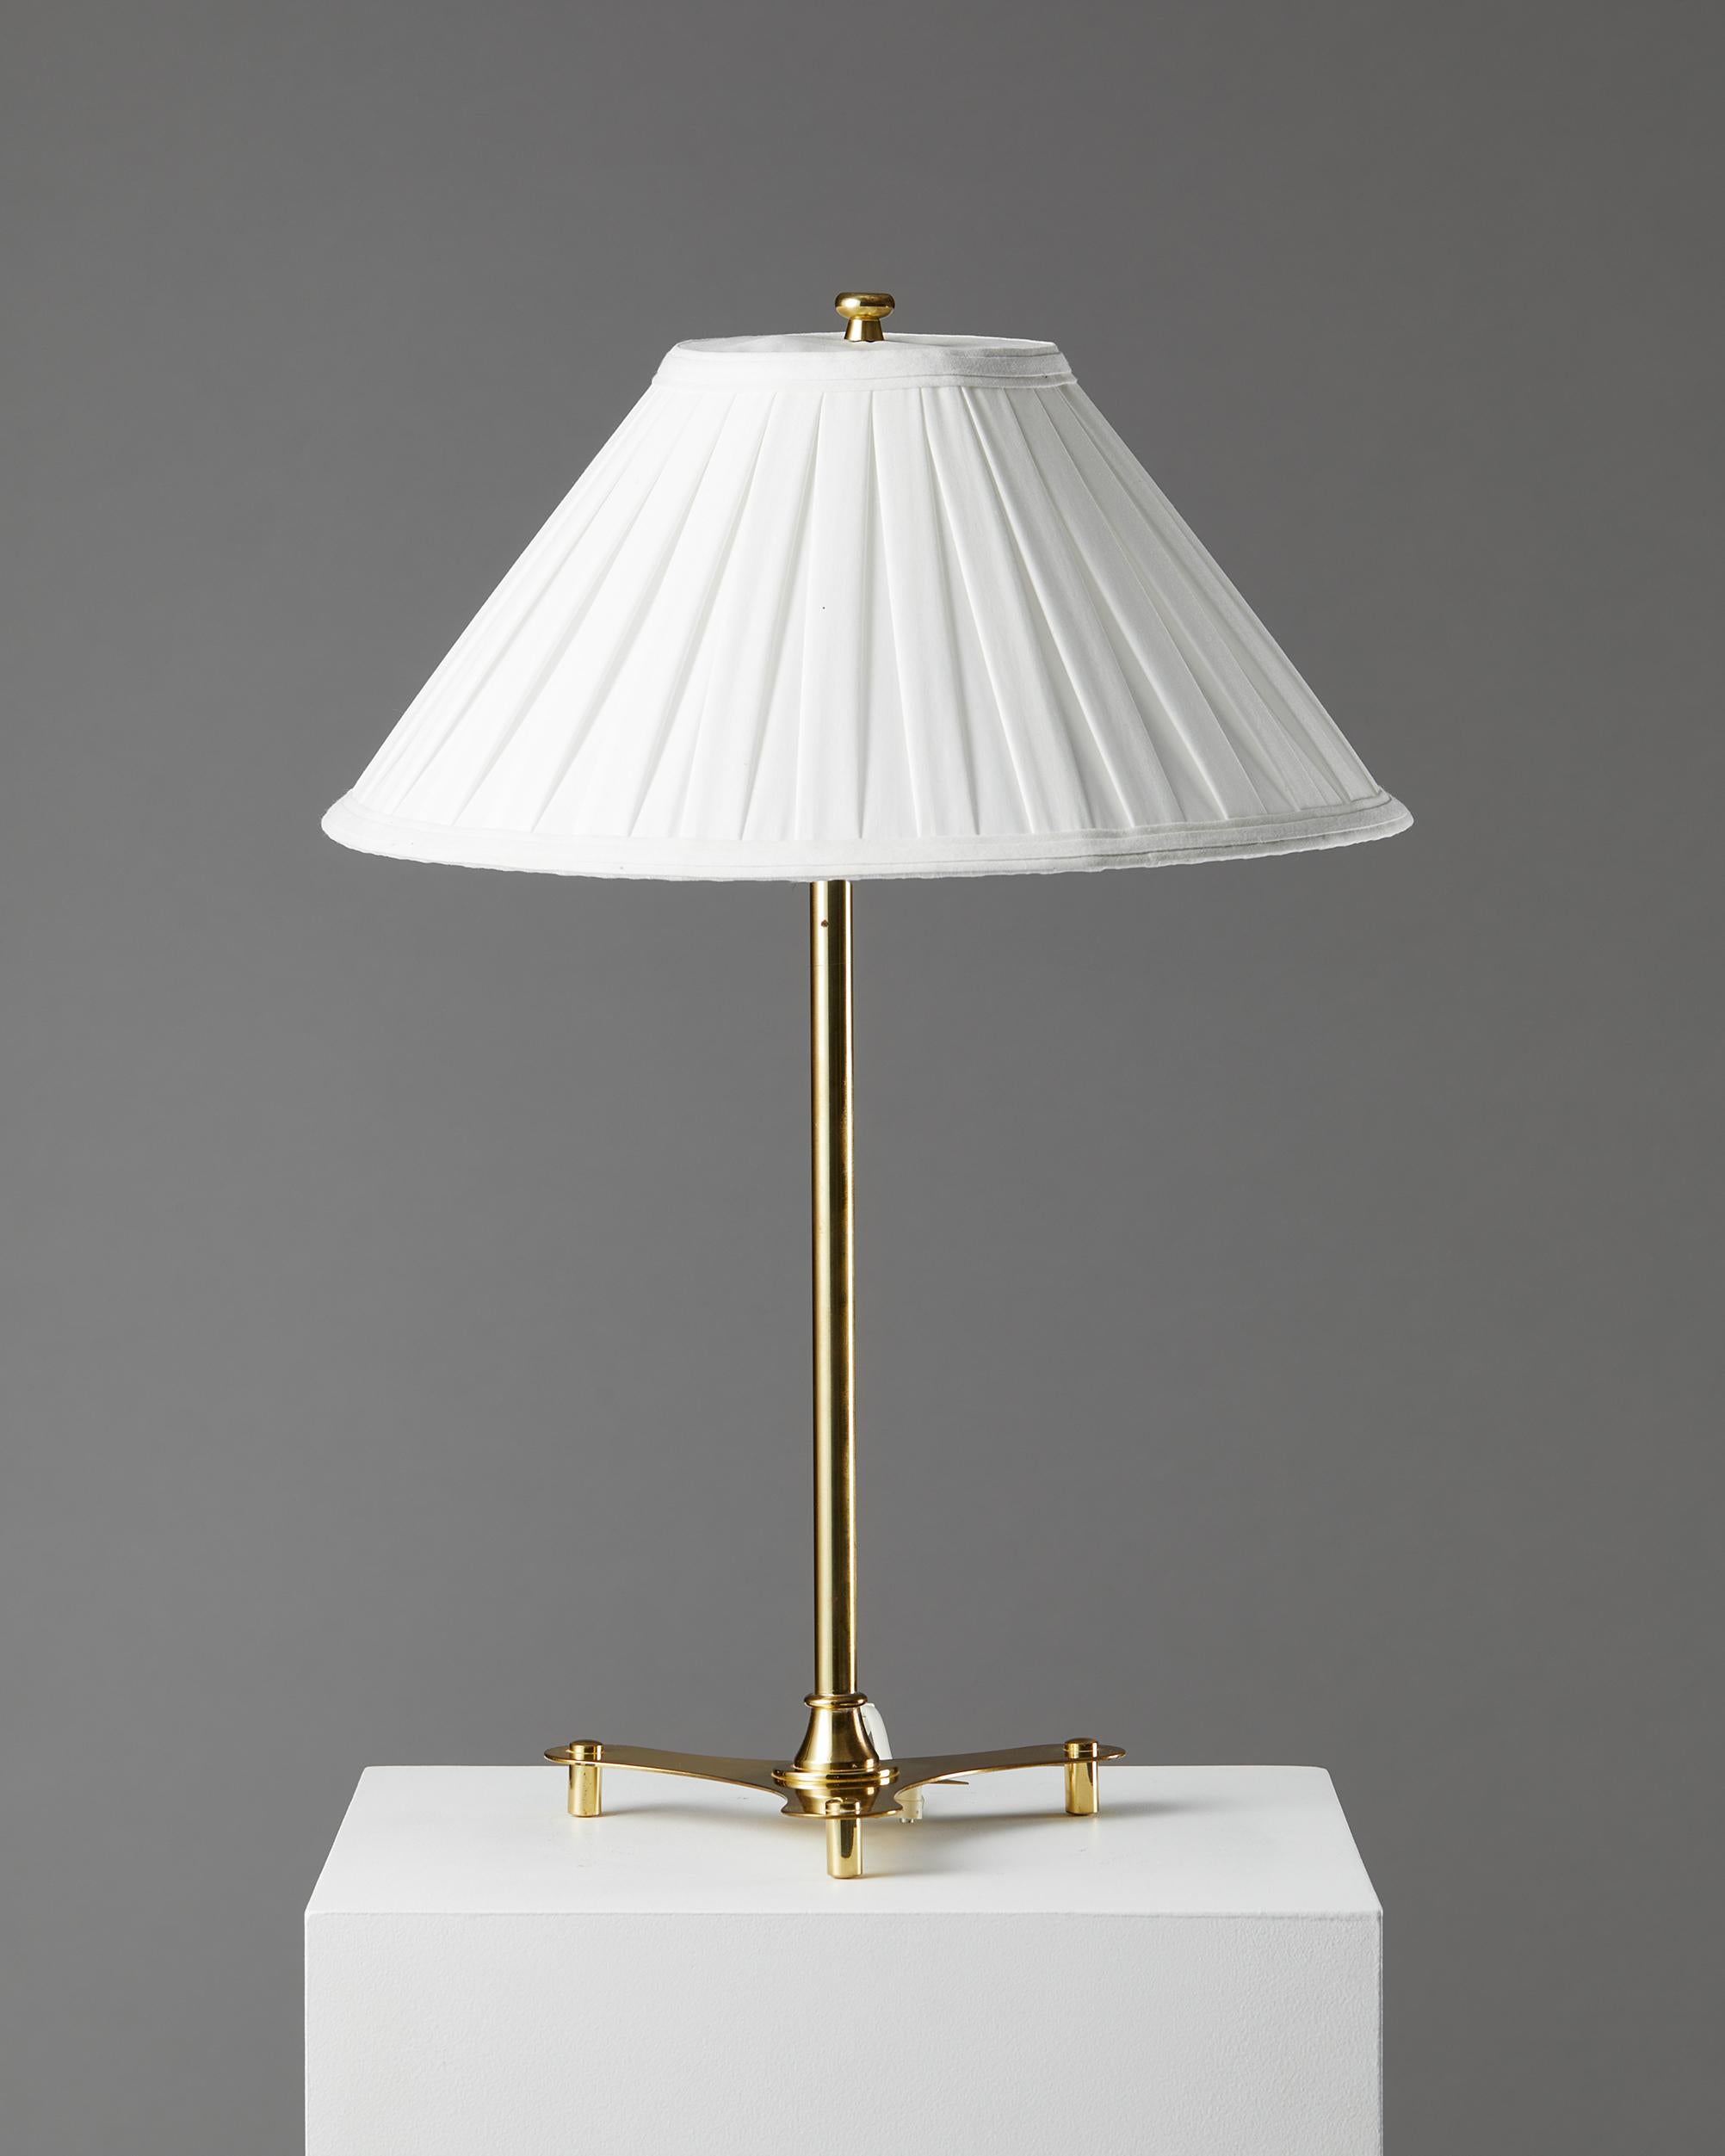 Mid-Century Modern Table Lamp Model 2467 Designed by Josef Frank for Svenskt Tenn, Sweden, 1950s